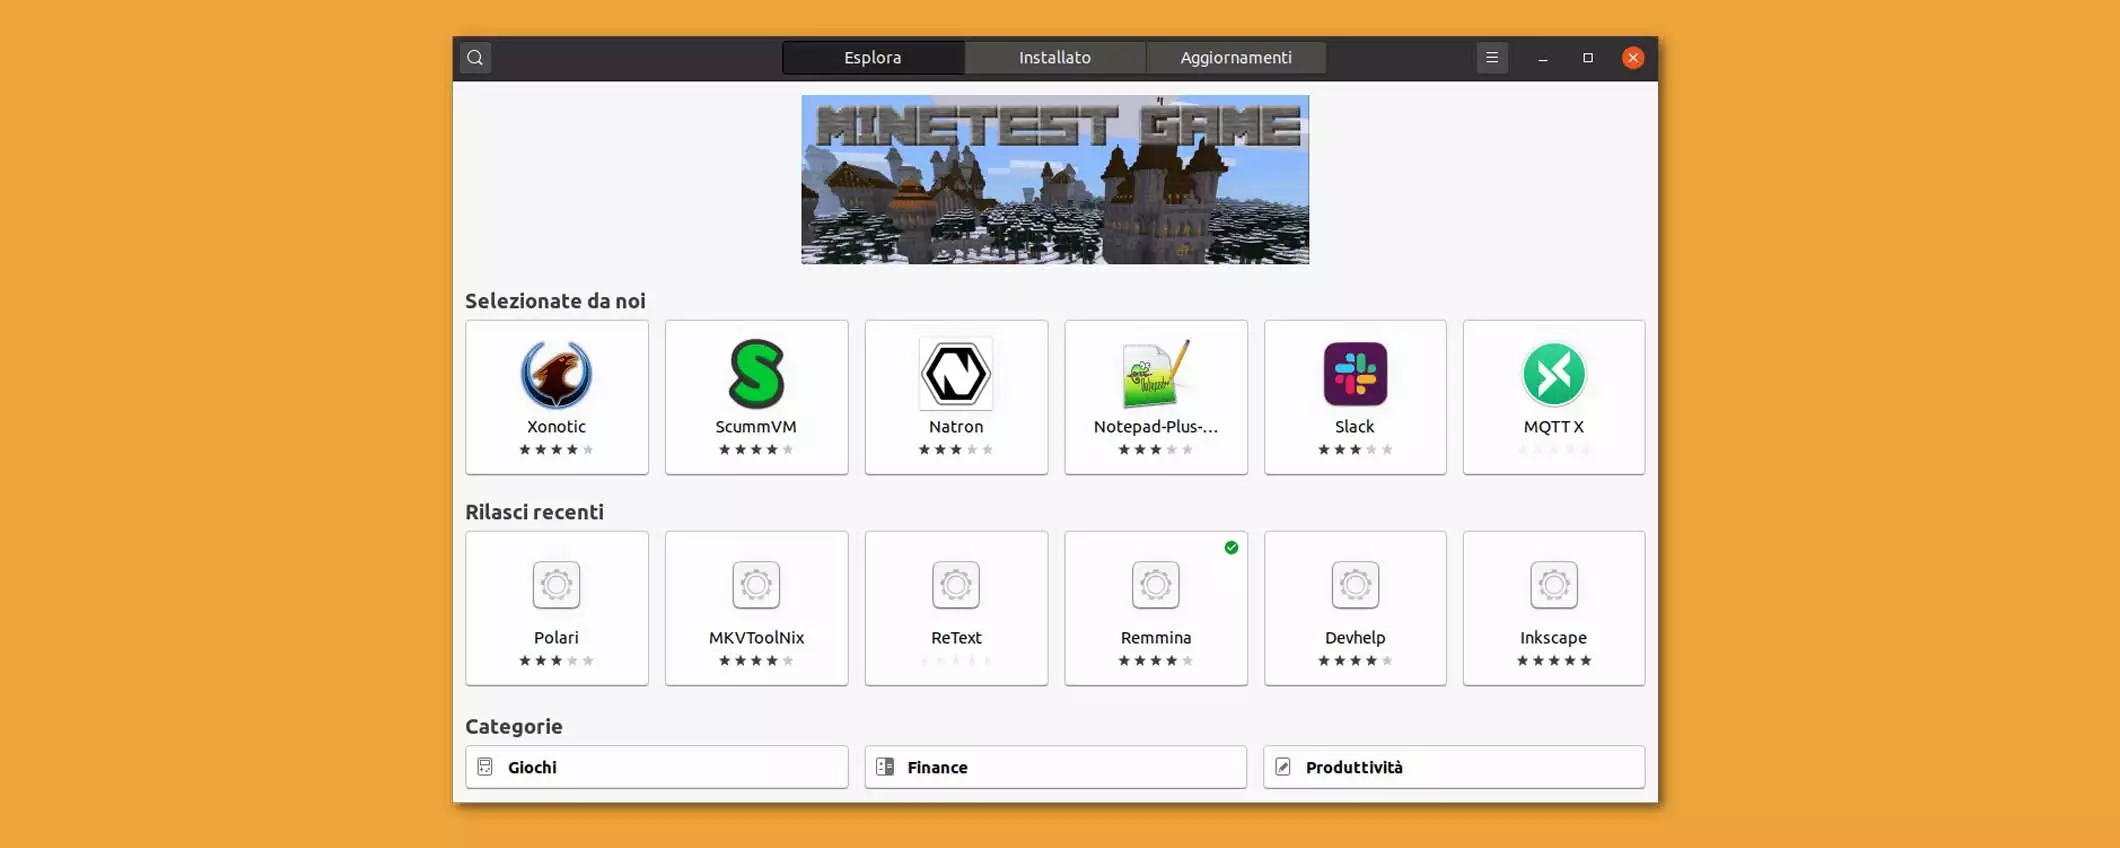 Ubuntu potrà installare i pacchetti DEB esterni con l’App Center